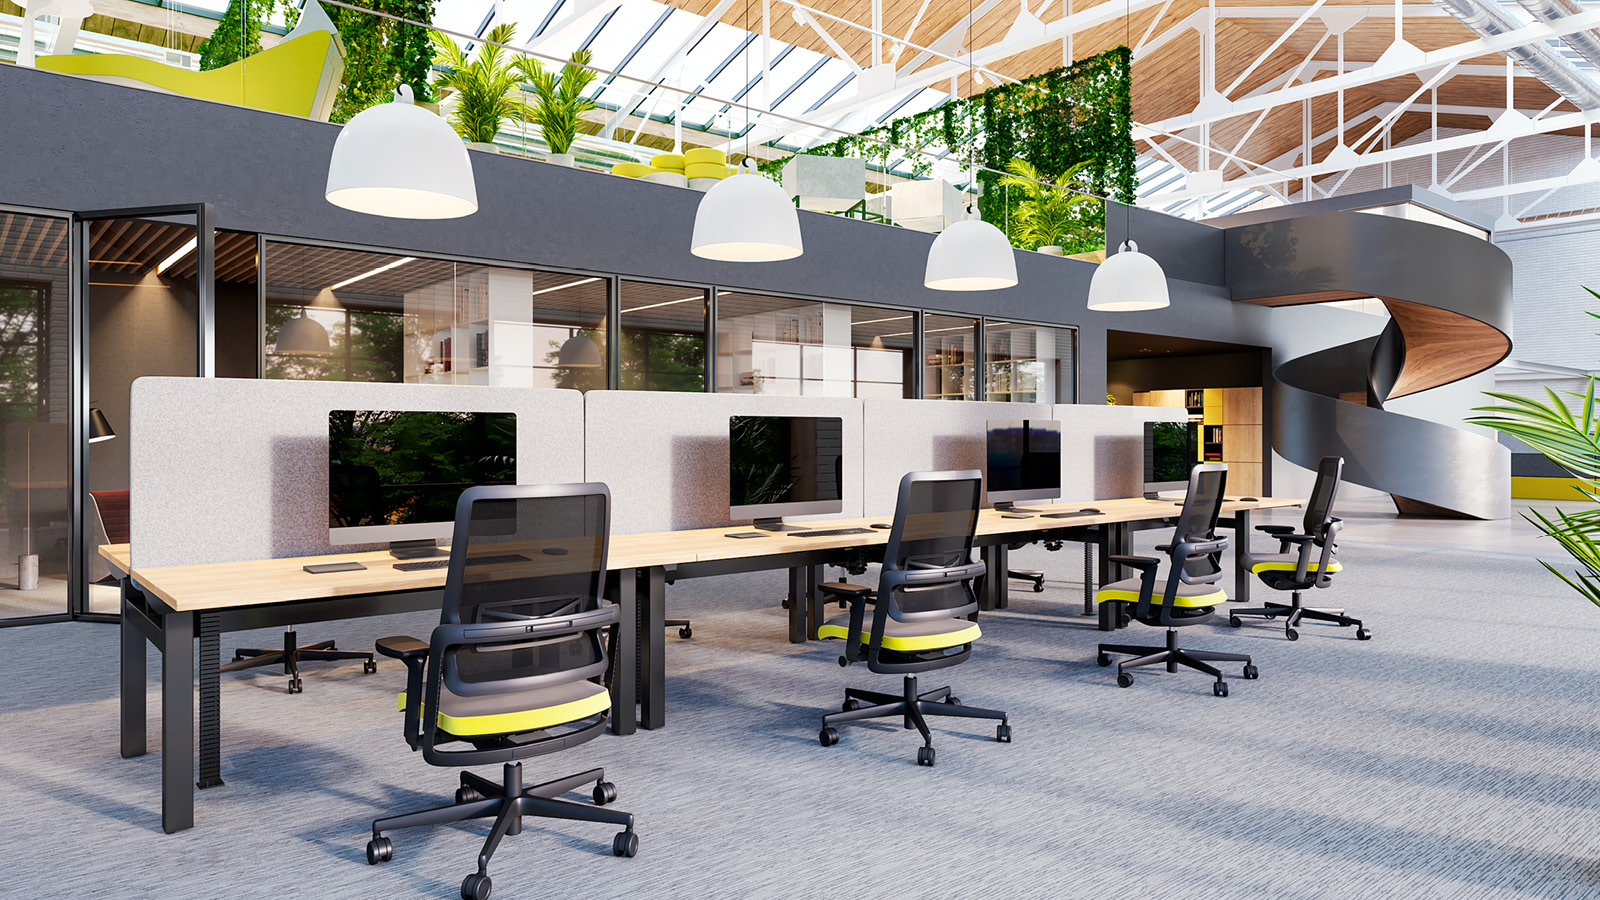 Aranżacja open space - łączone biurka z panelami zostały uzupełnione o obrotowe fotele pracownicze. U góry - wiszące lampy.